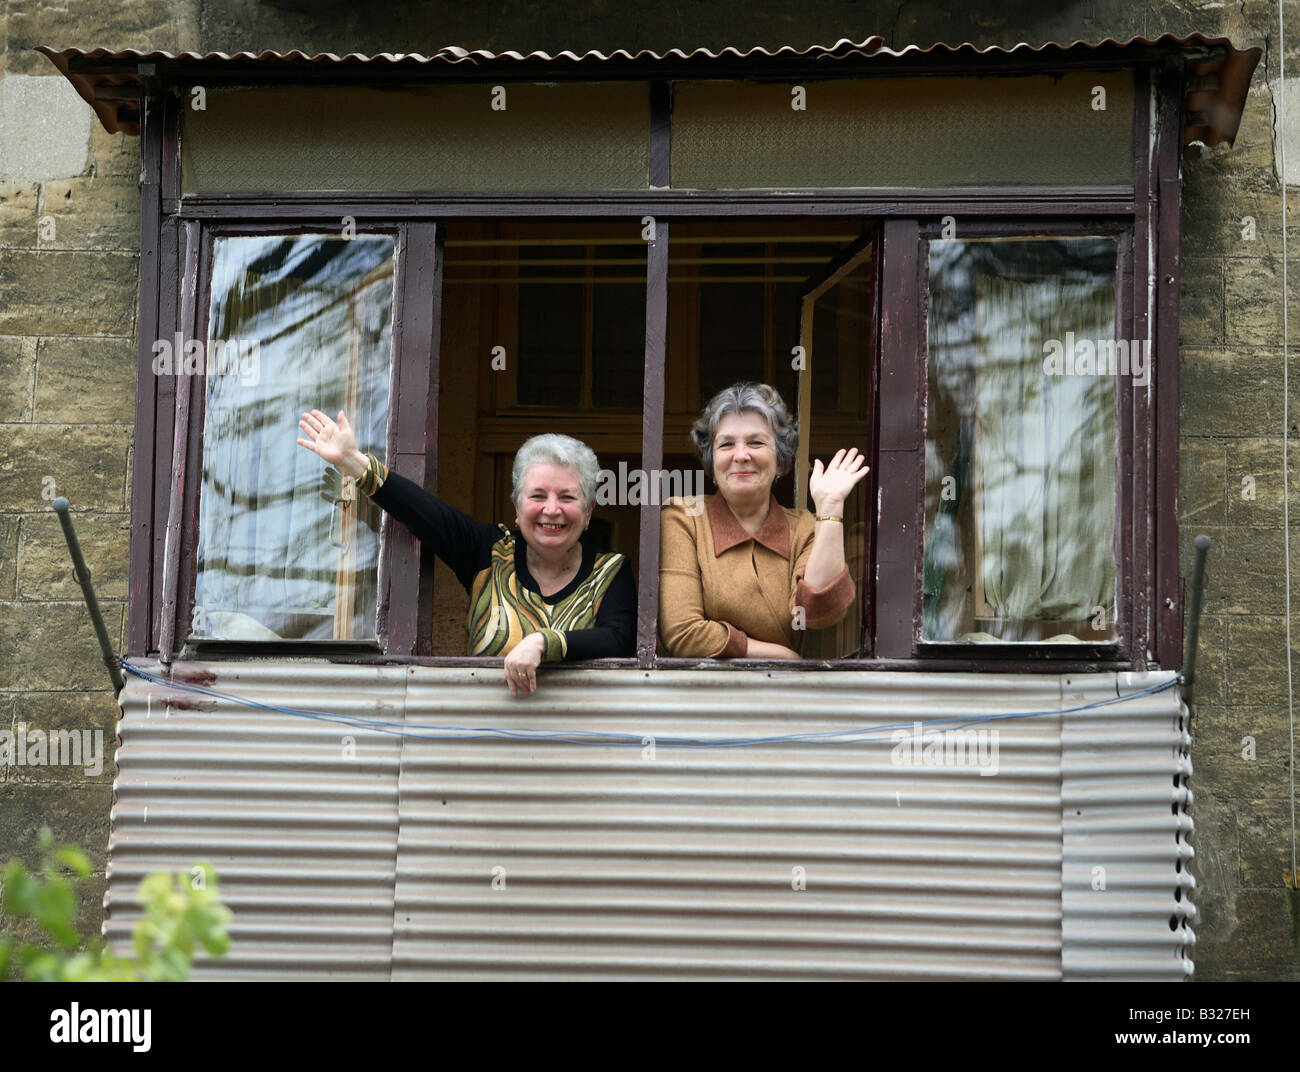 Zwei Frauen in einem Fenster stehen und winken, Odessa, Ukraine Stockfoto